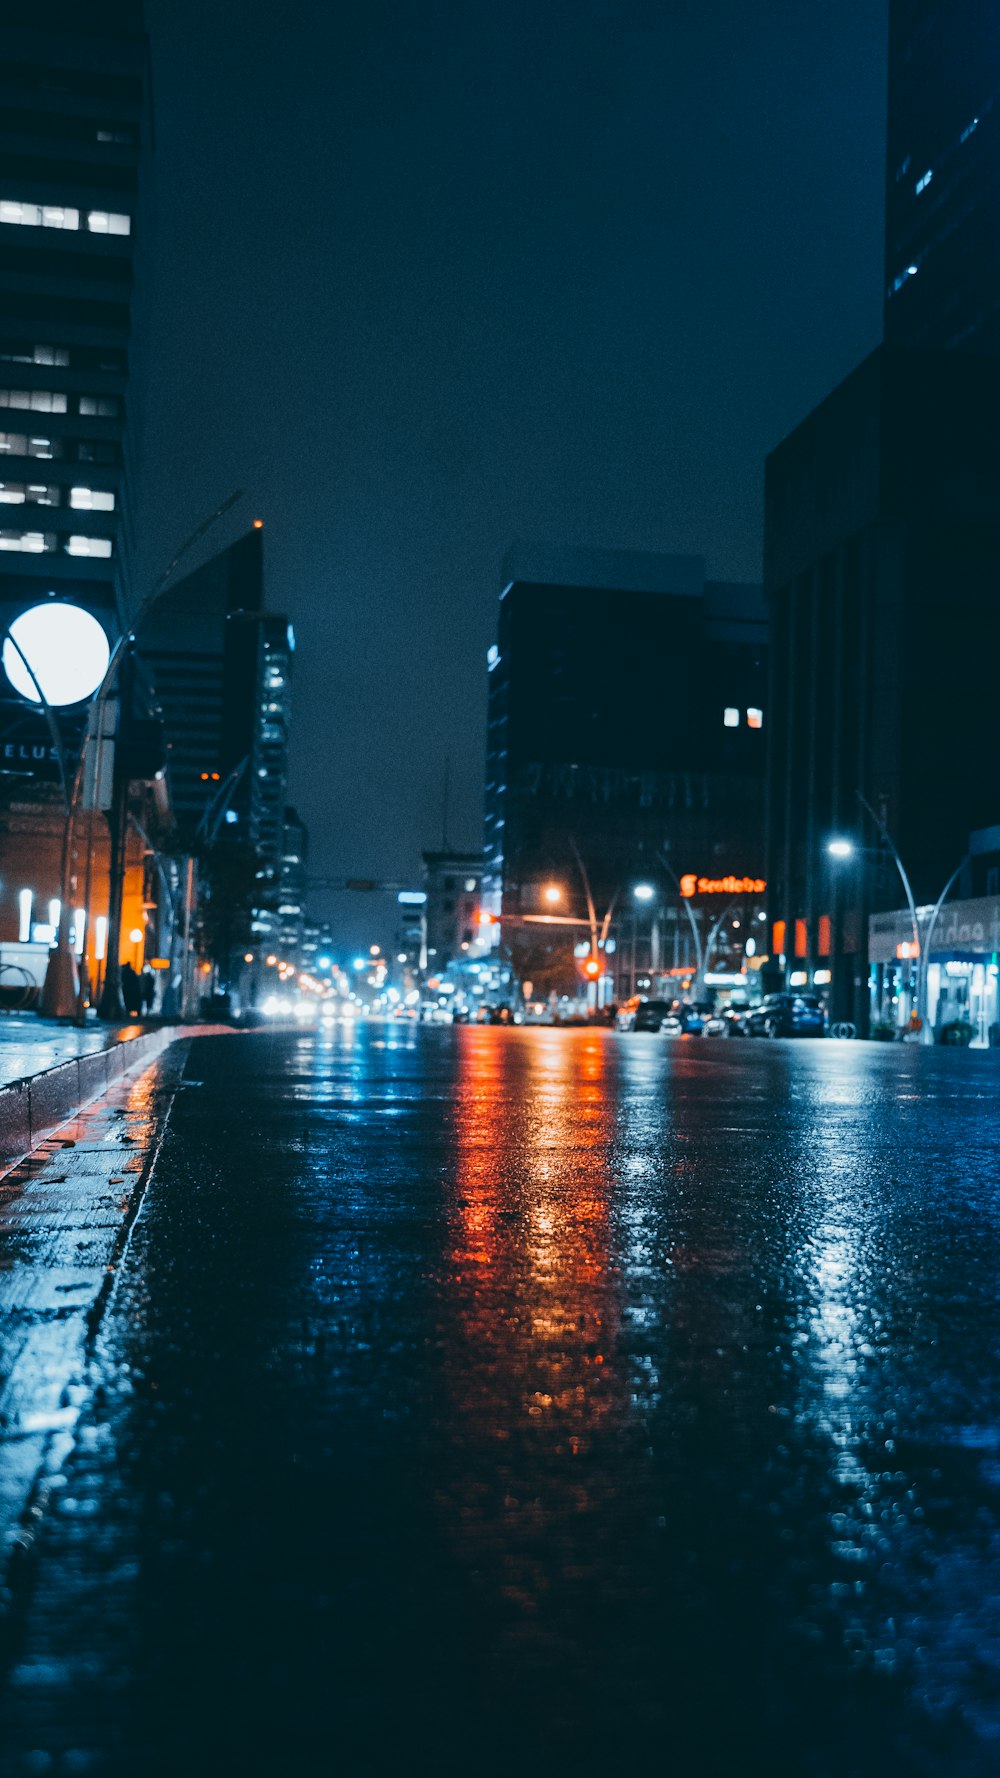 Carretera gris y mojada cerca de edificios de gran altura durante la noche